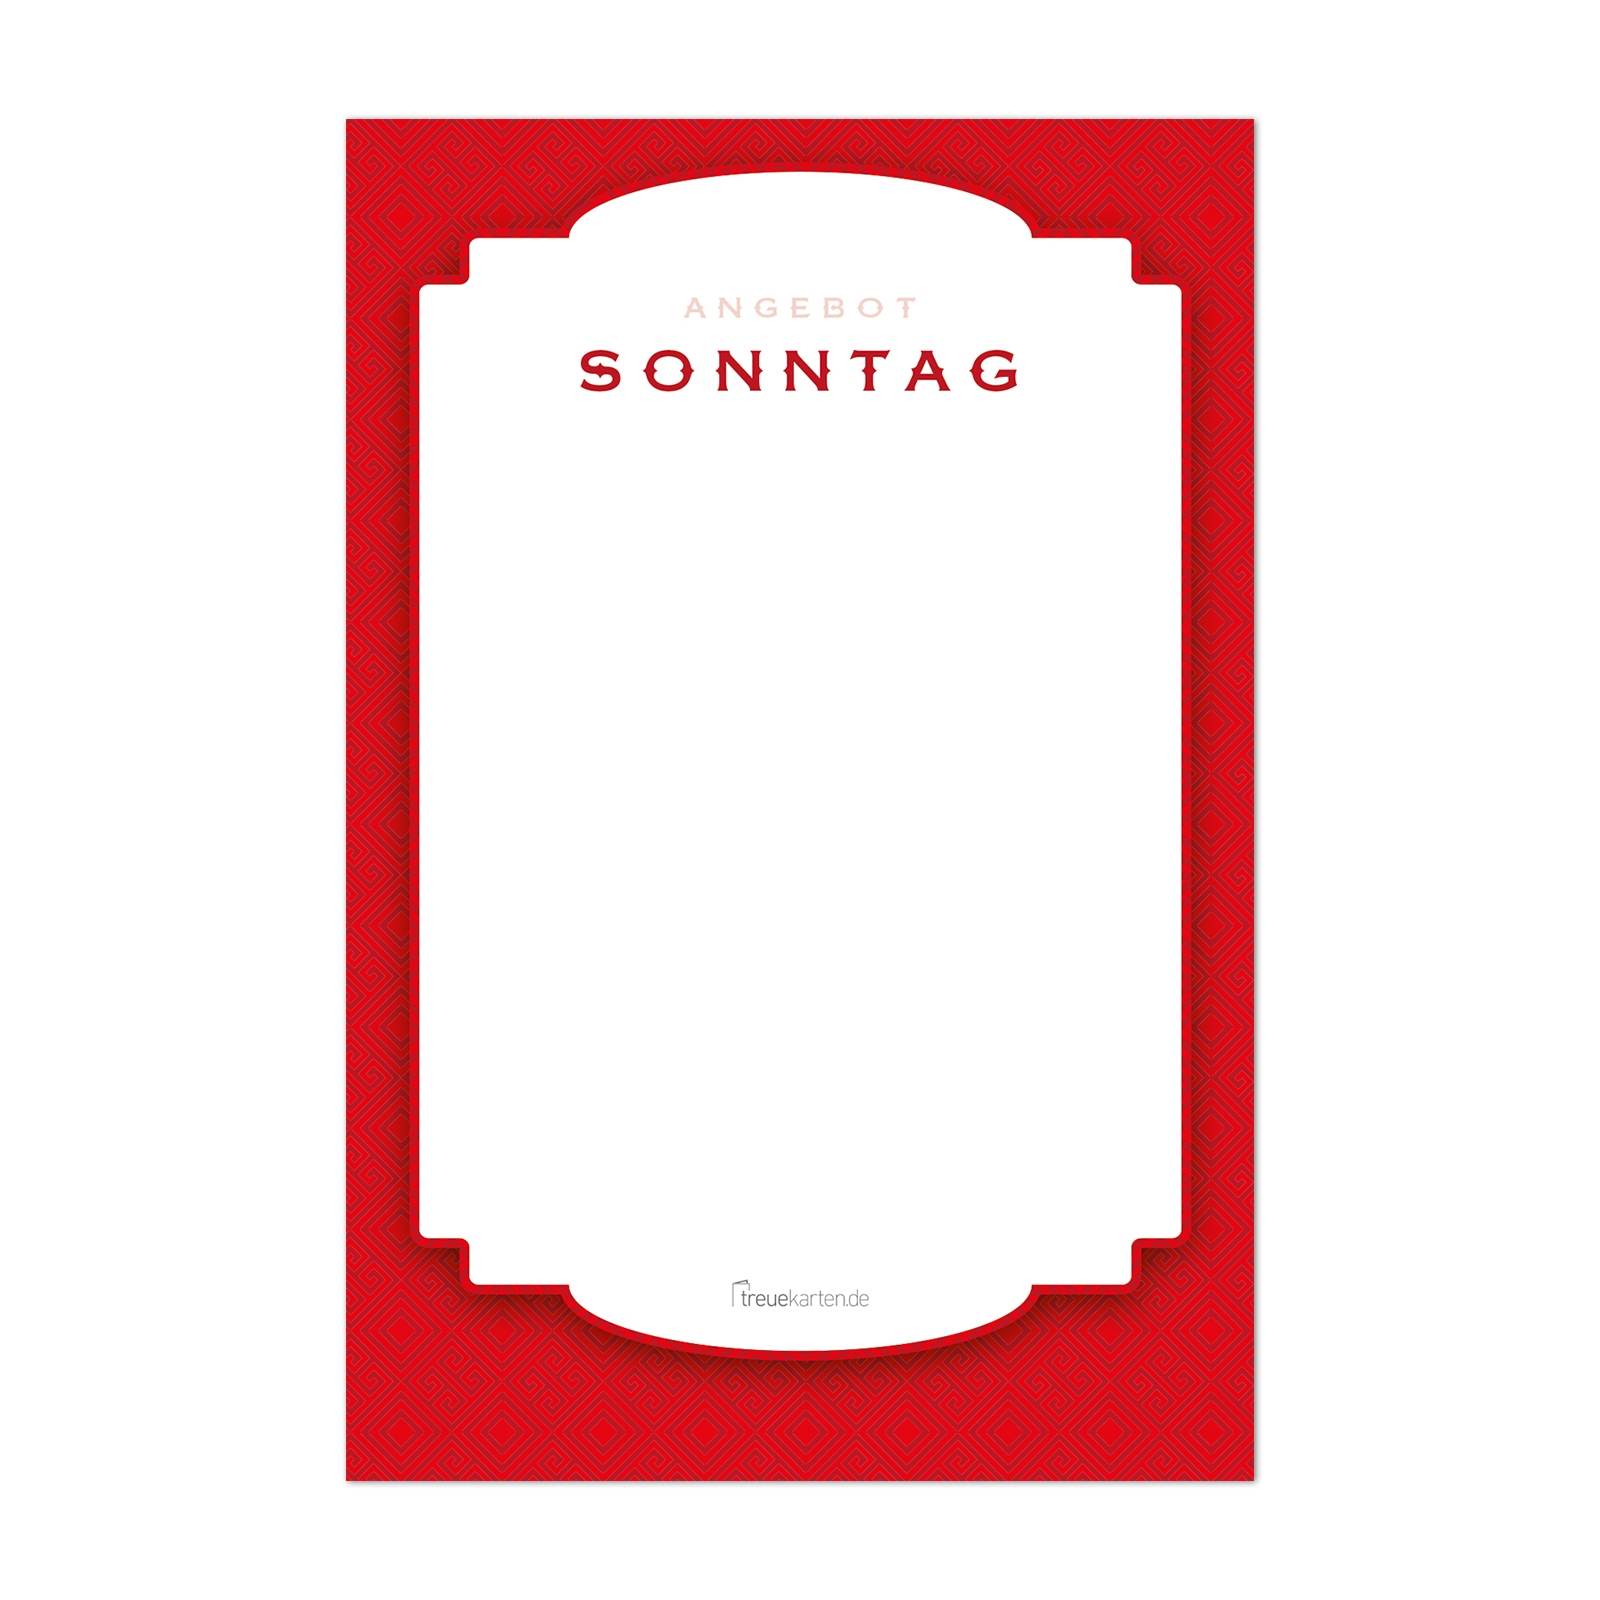 Tagesangebot-Aufsteller, rot, 10x15cm, Kunststoffabdeckung mit Korkaufsetzer, 8 austauschbare Karten